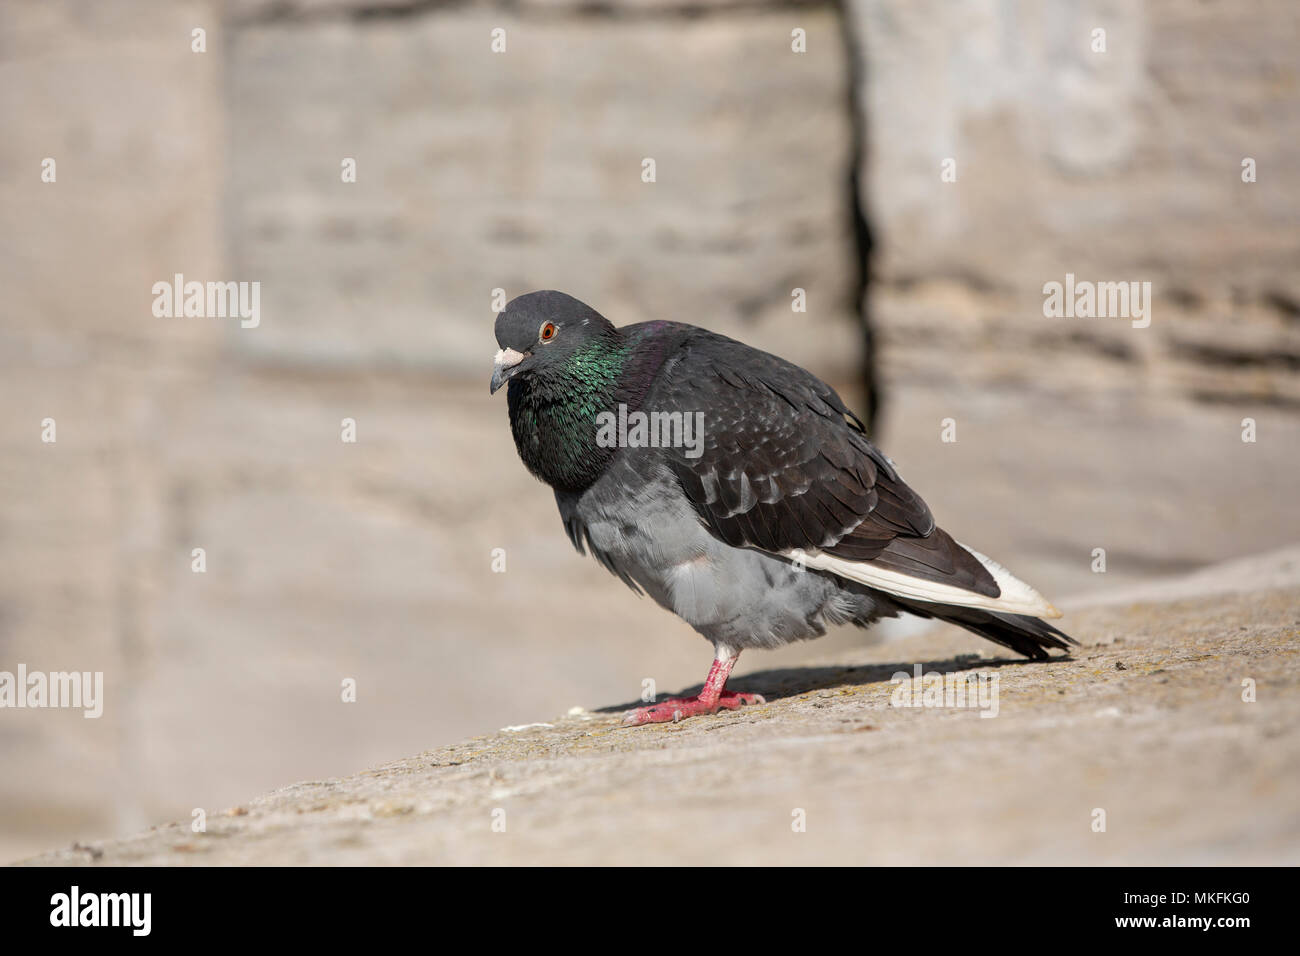 Feral común pigeon encaramado sobre un muro de piedra. Considera molestia o parásitos debido al caos que crean la humilde pájaro es un sitio común en ciudades Foto de stock